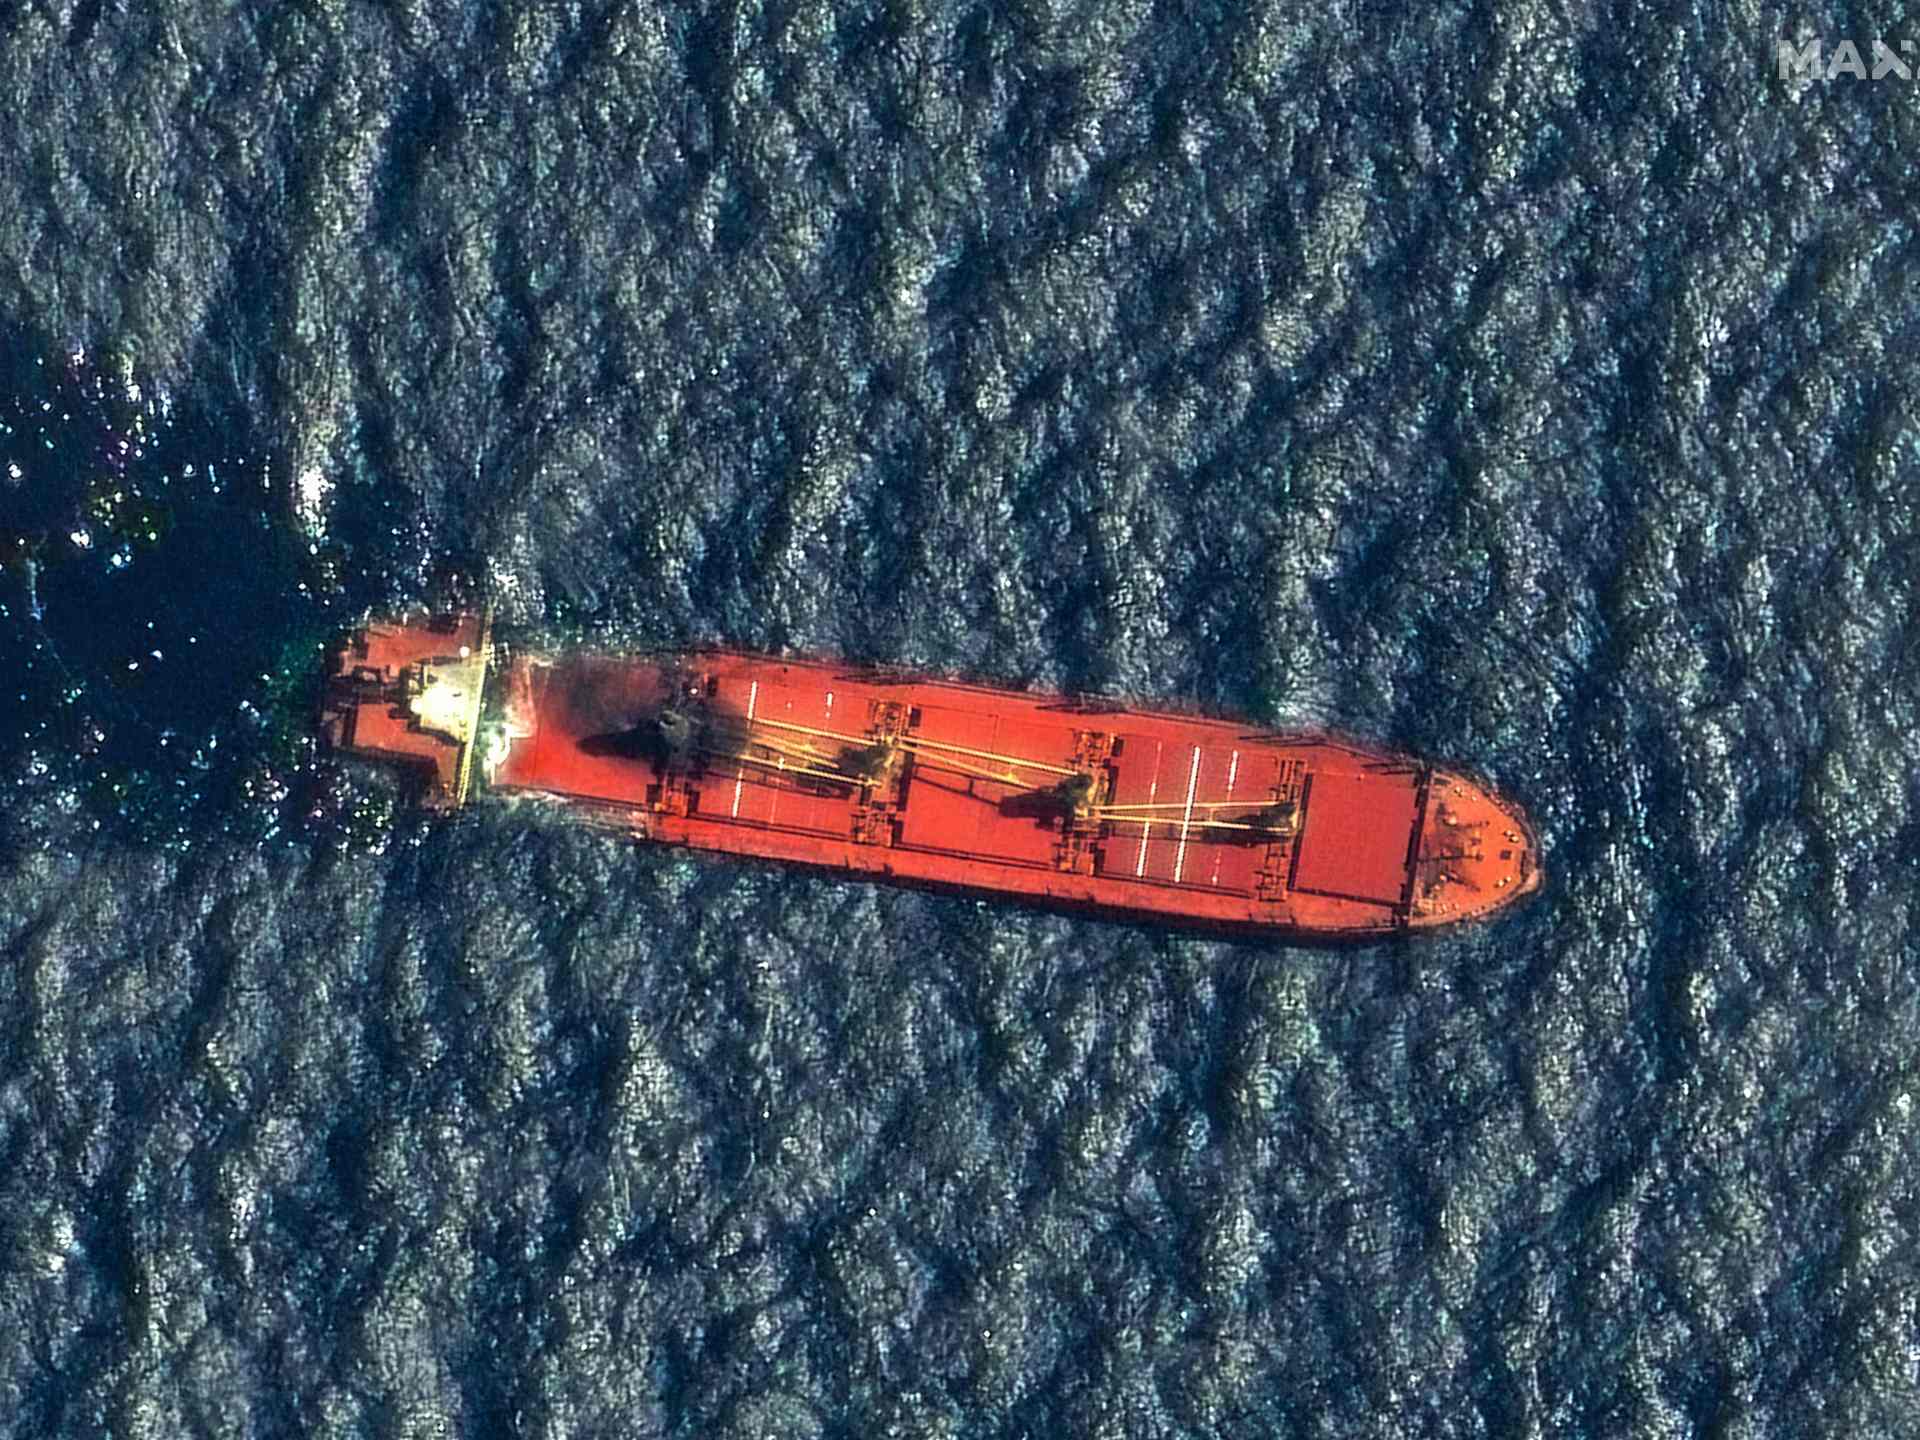 الحوثيون يستهدفون سفينتين إسرائيليتين وثالثة يونانية | أخبار – البوكس نيوز